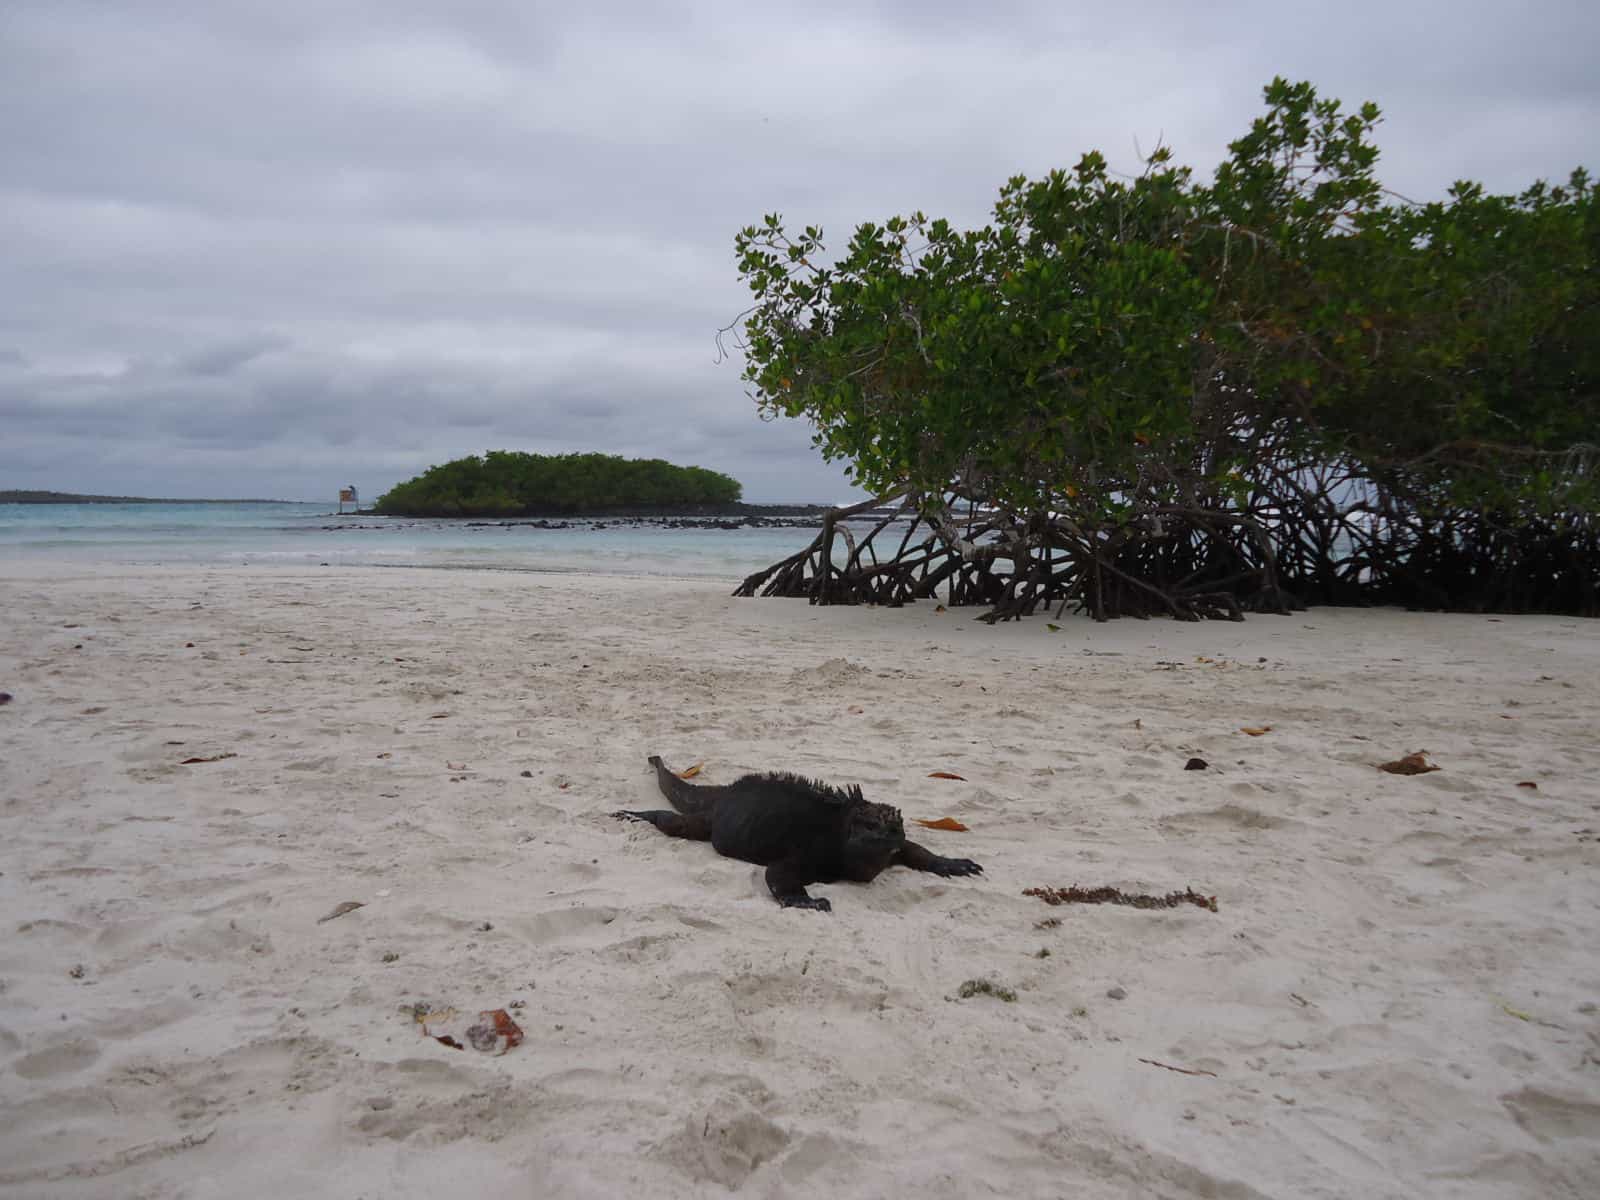 A marine iguana at Tortuga Bay, Galapagos